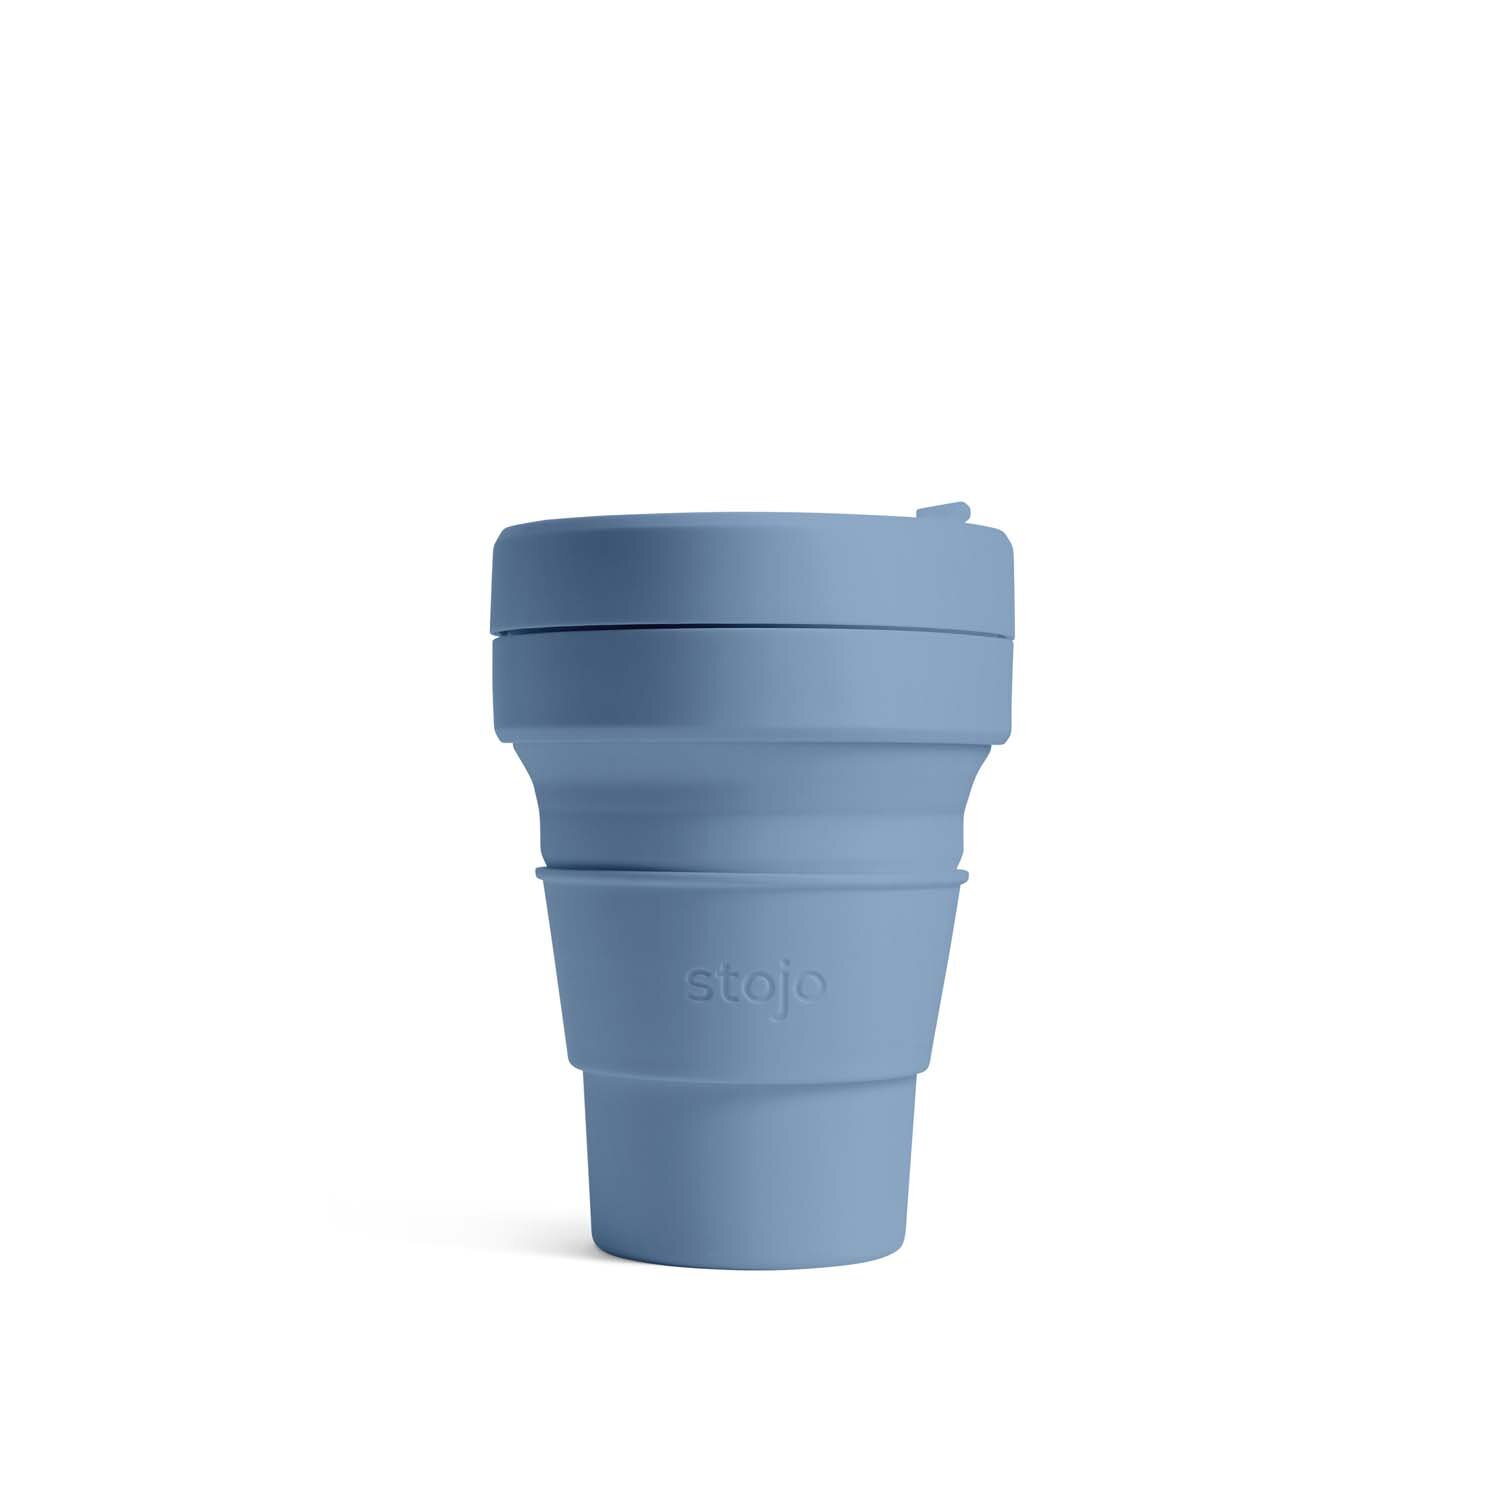  Pocket Cup - 12,7 cm déplié 5,1 cm plié - 355 ml - S1-STE 